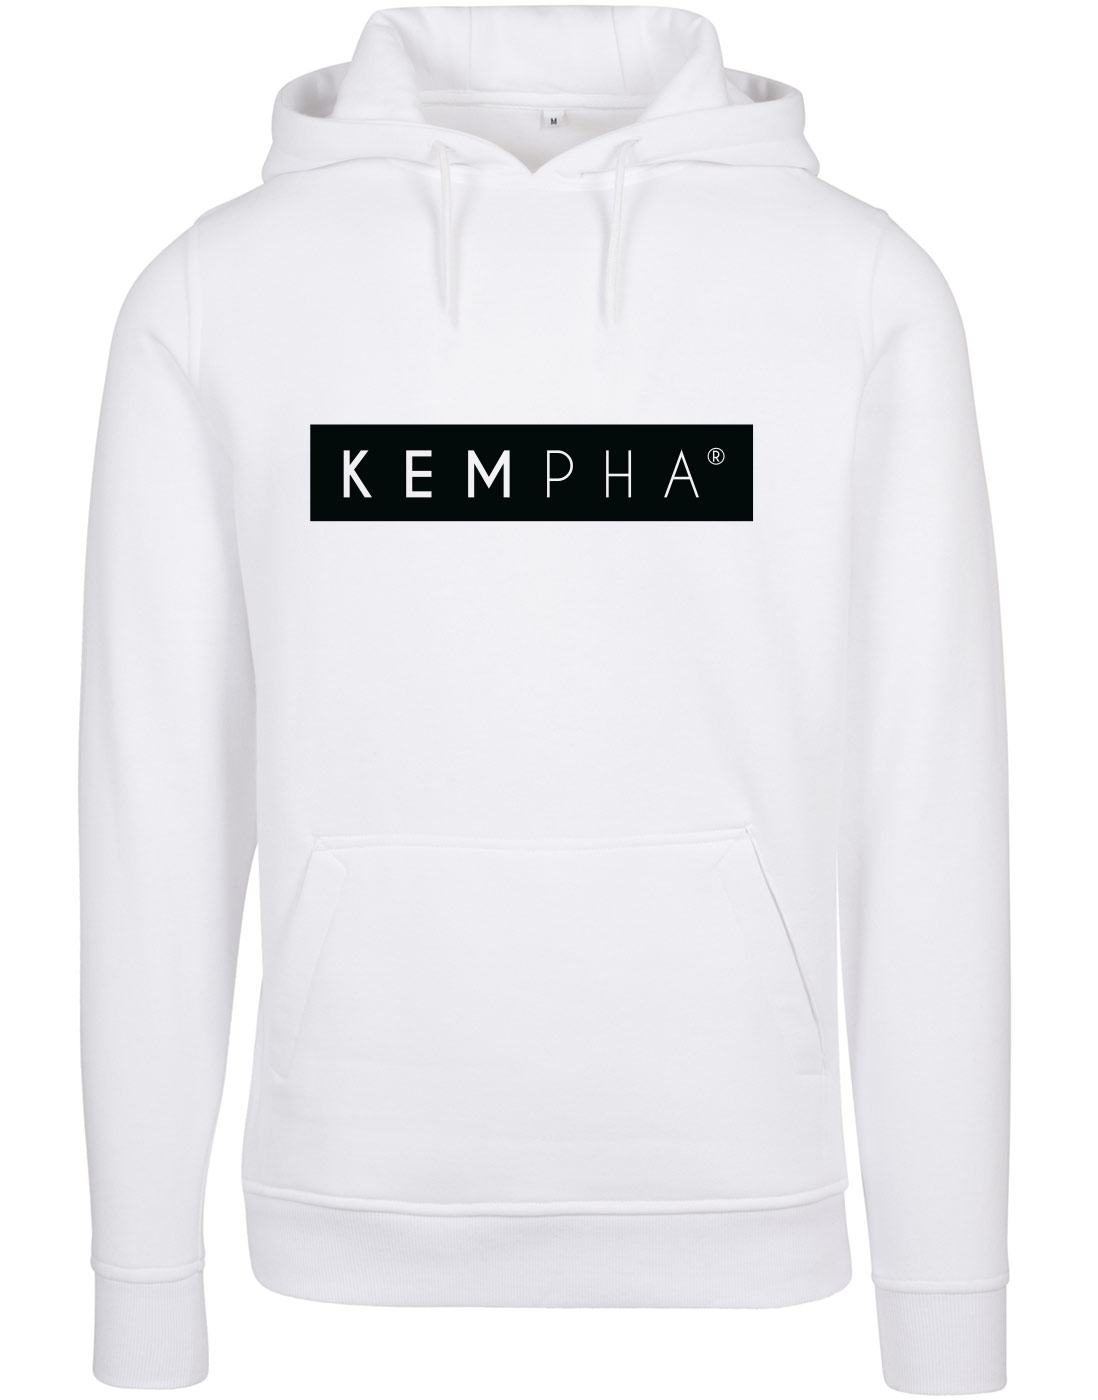 Kempha Premium Hoodie 